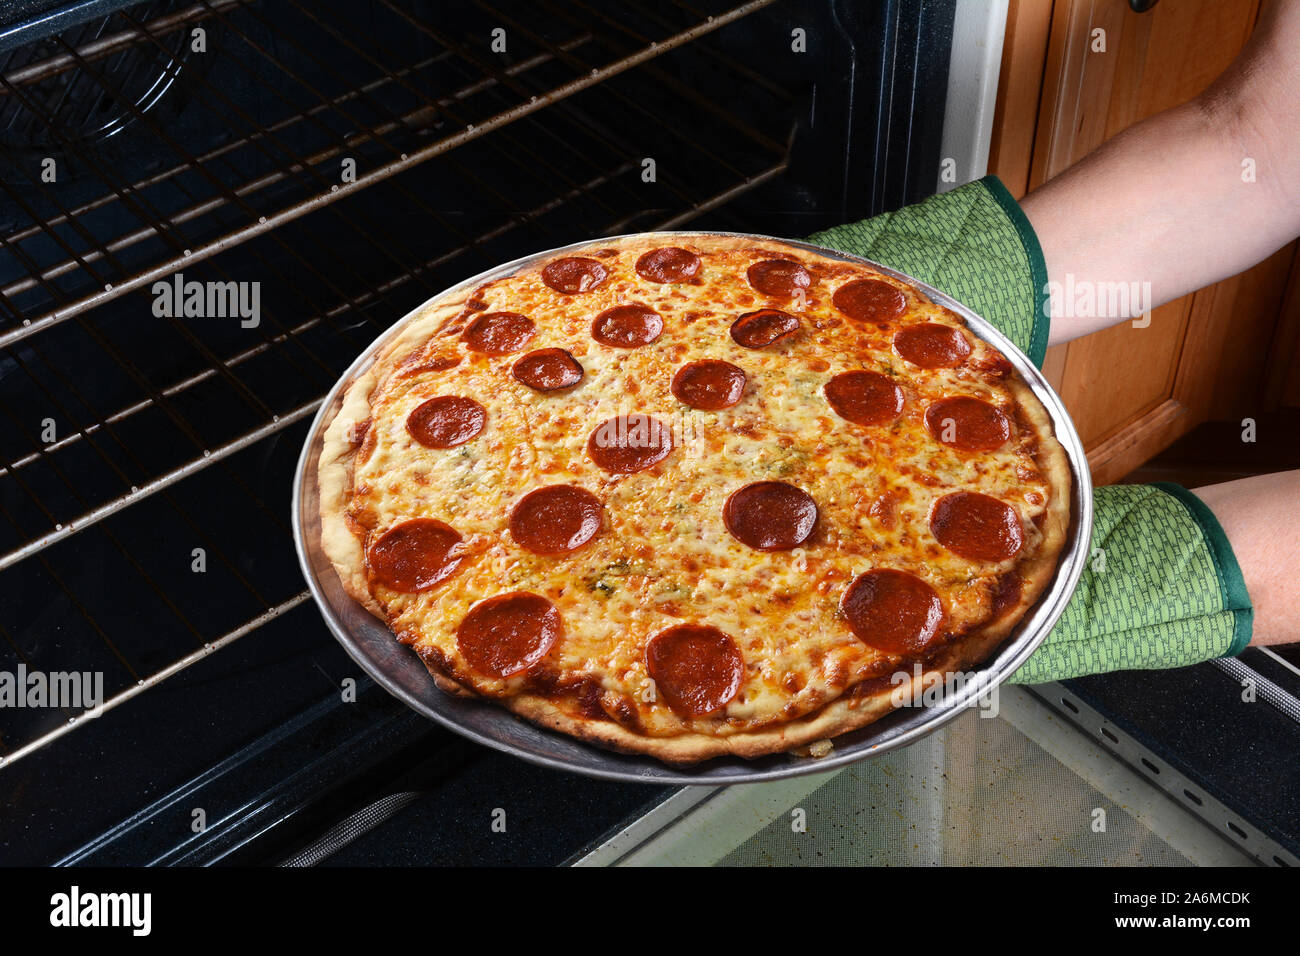 Primo piano di una donna prendendo un fresco pizza cotta al forno la torta dal forno. Orizzontale con womans mani in guanti da forno solo. Foto Stock